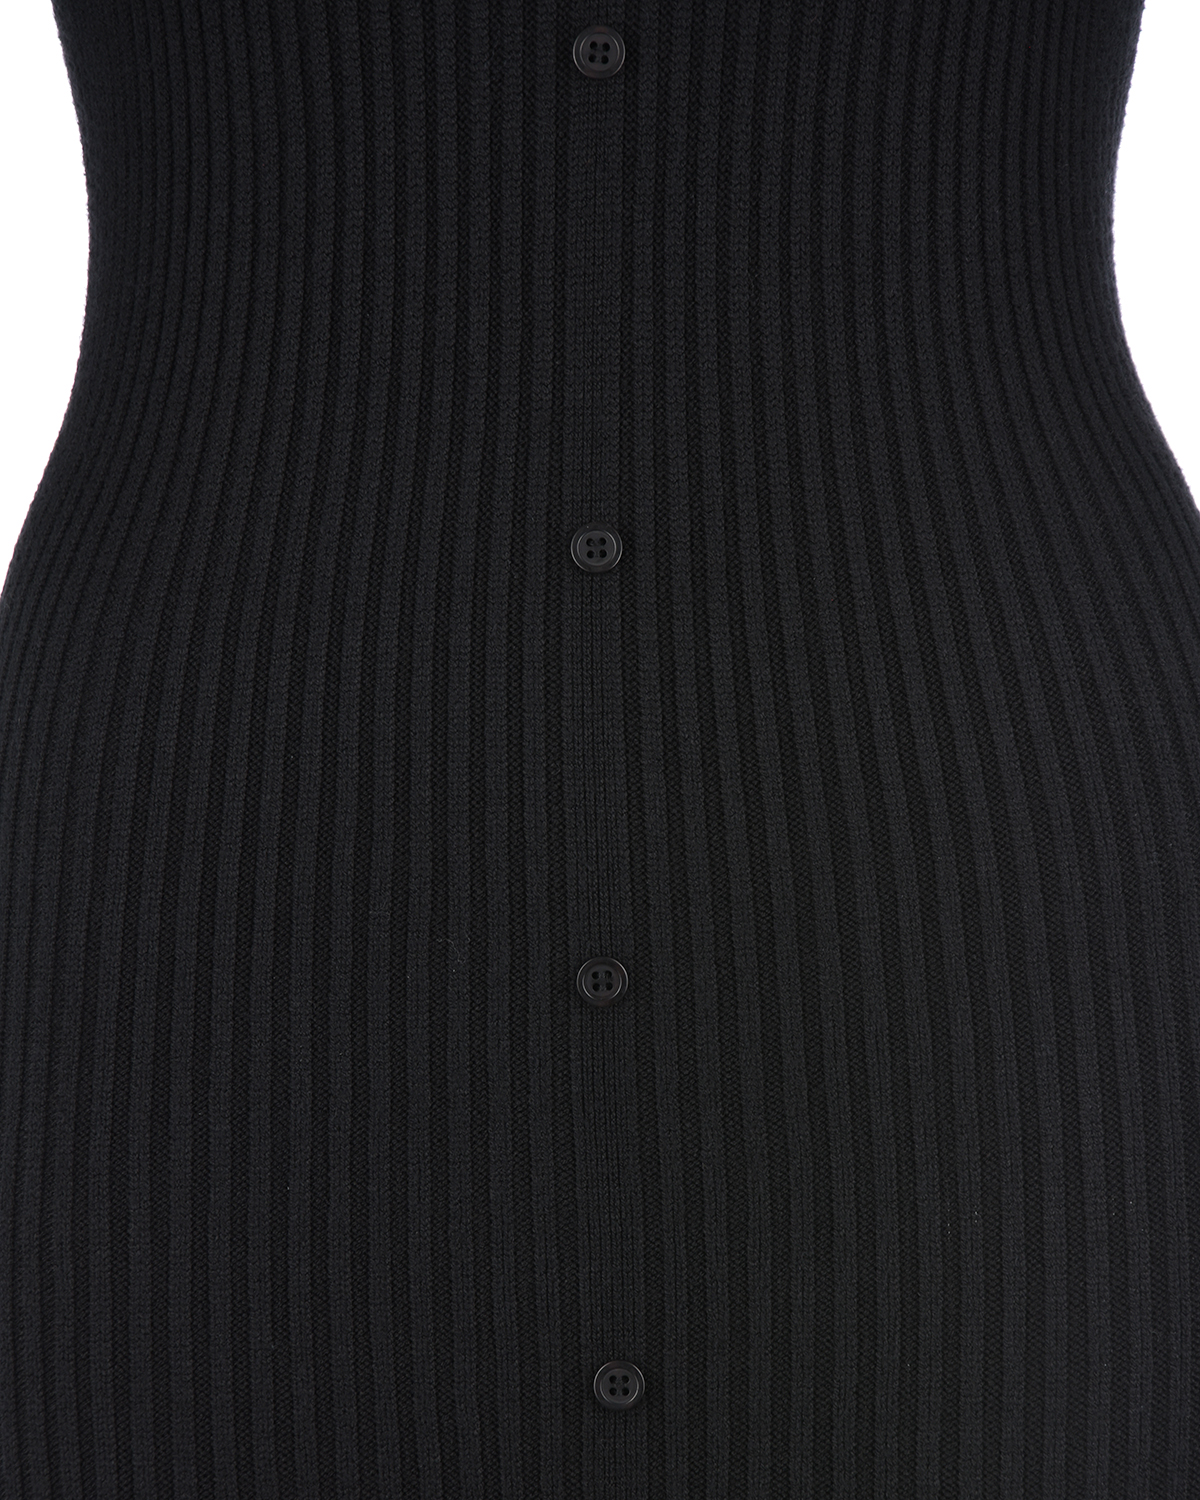 Черное трикотажное платье Bella Pietro Brunelli, размер 40, цвет черный - фото 6